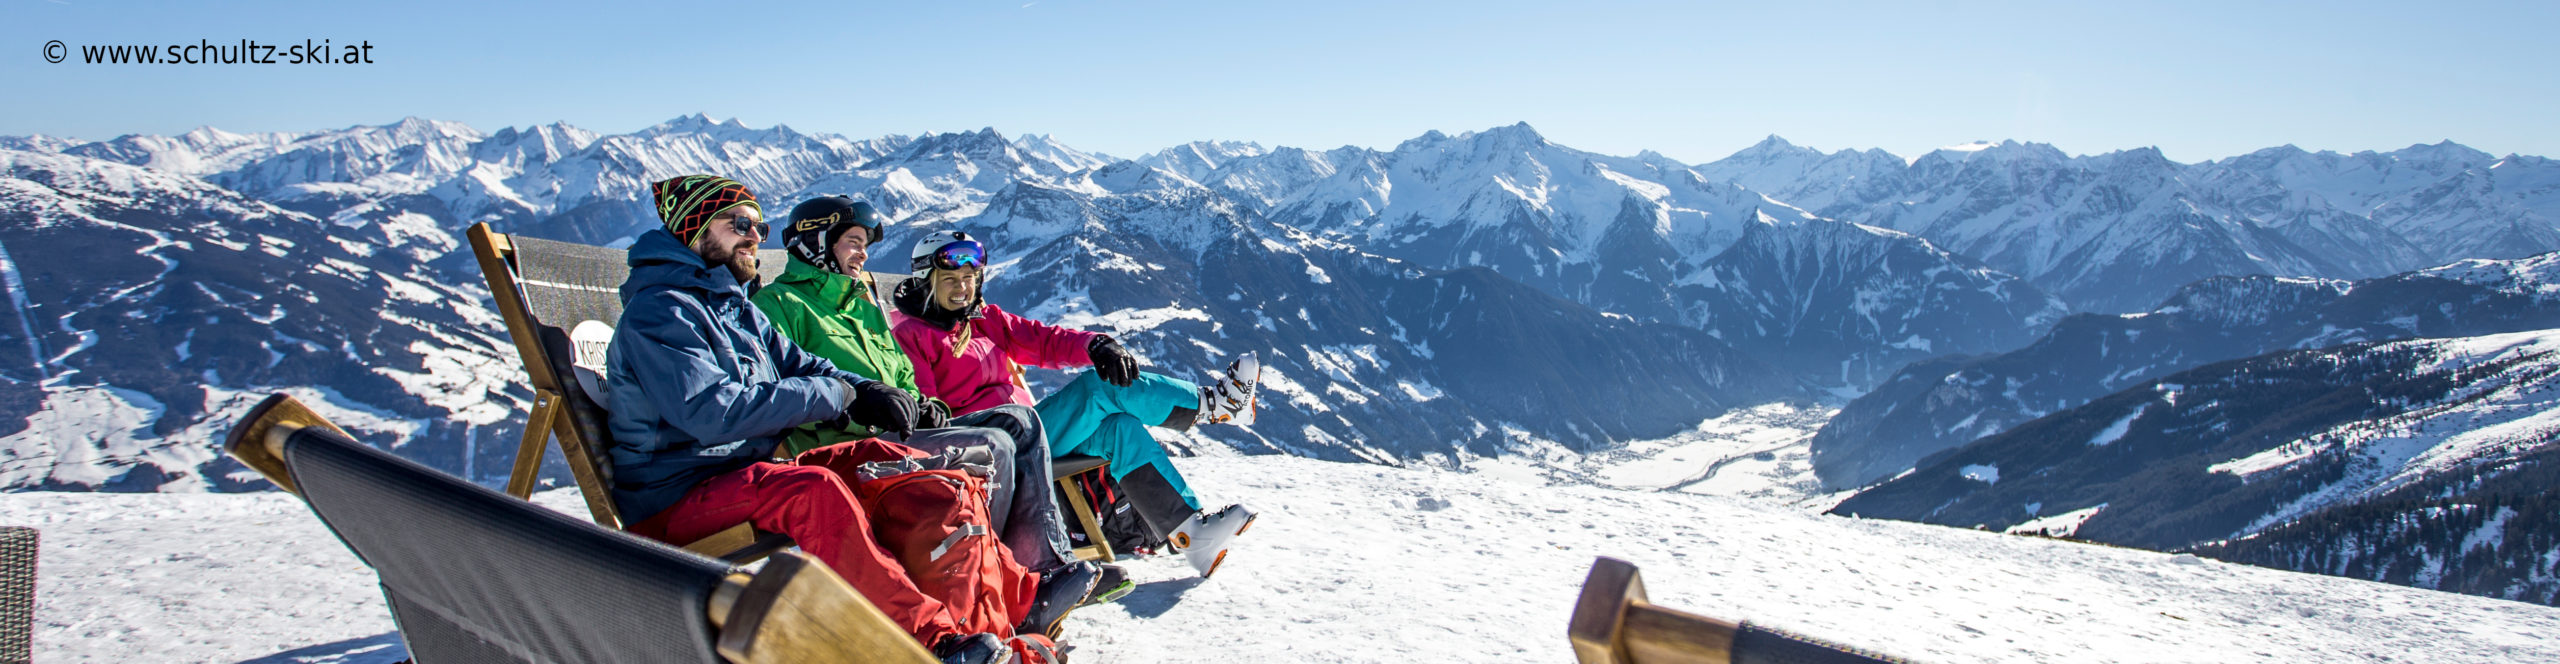 ZILLERTAL – verlängertes Skiwochenende mit 4 Skitagen – in den Weihnachtsferien – Hotel in Strass – ab Donnerstag 